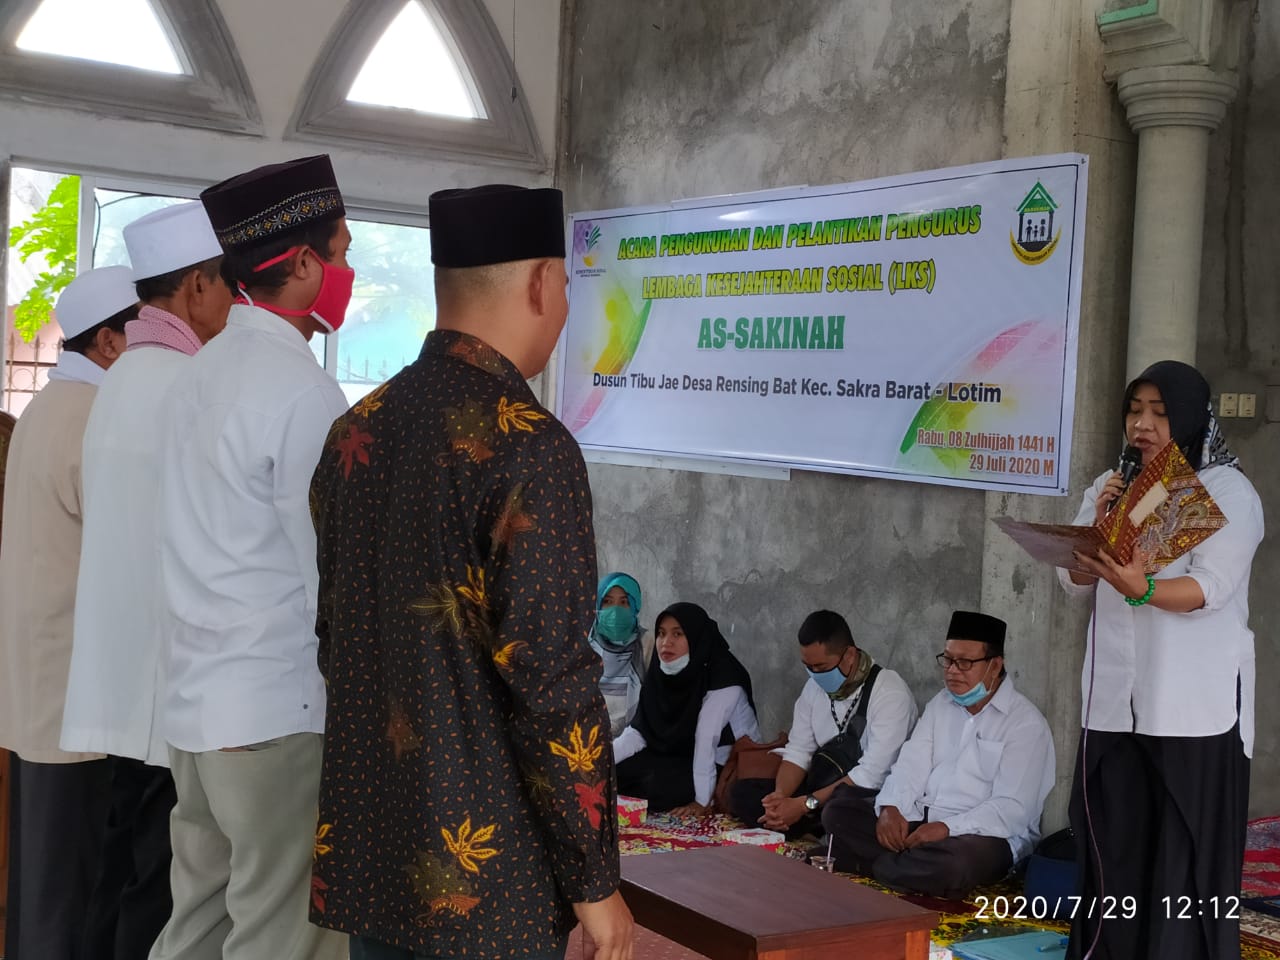 Dinas Sosial Berkunjung Dalam Pengukuhan LKSA AS-SAKINAH Dusun Tibu Jae Desa Rensing Bat Kec. Sakra Barat